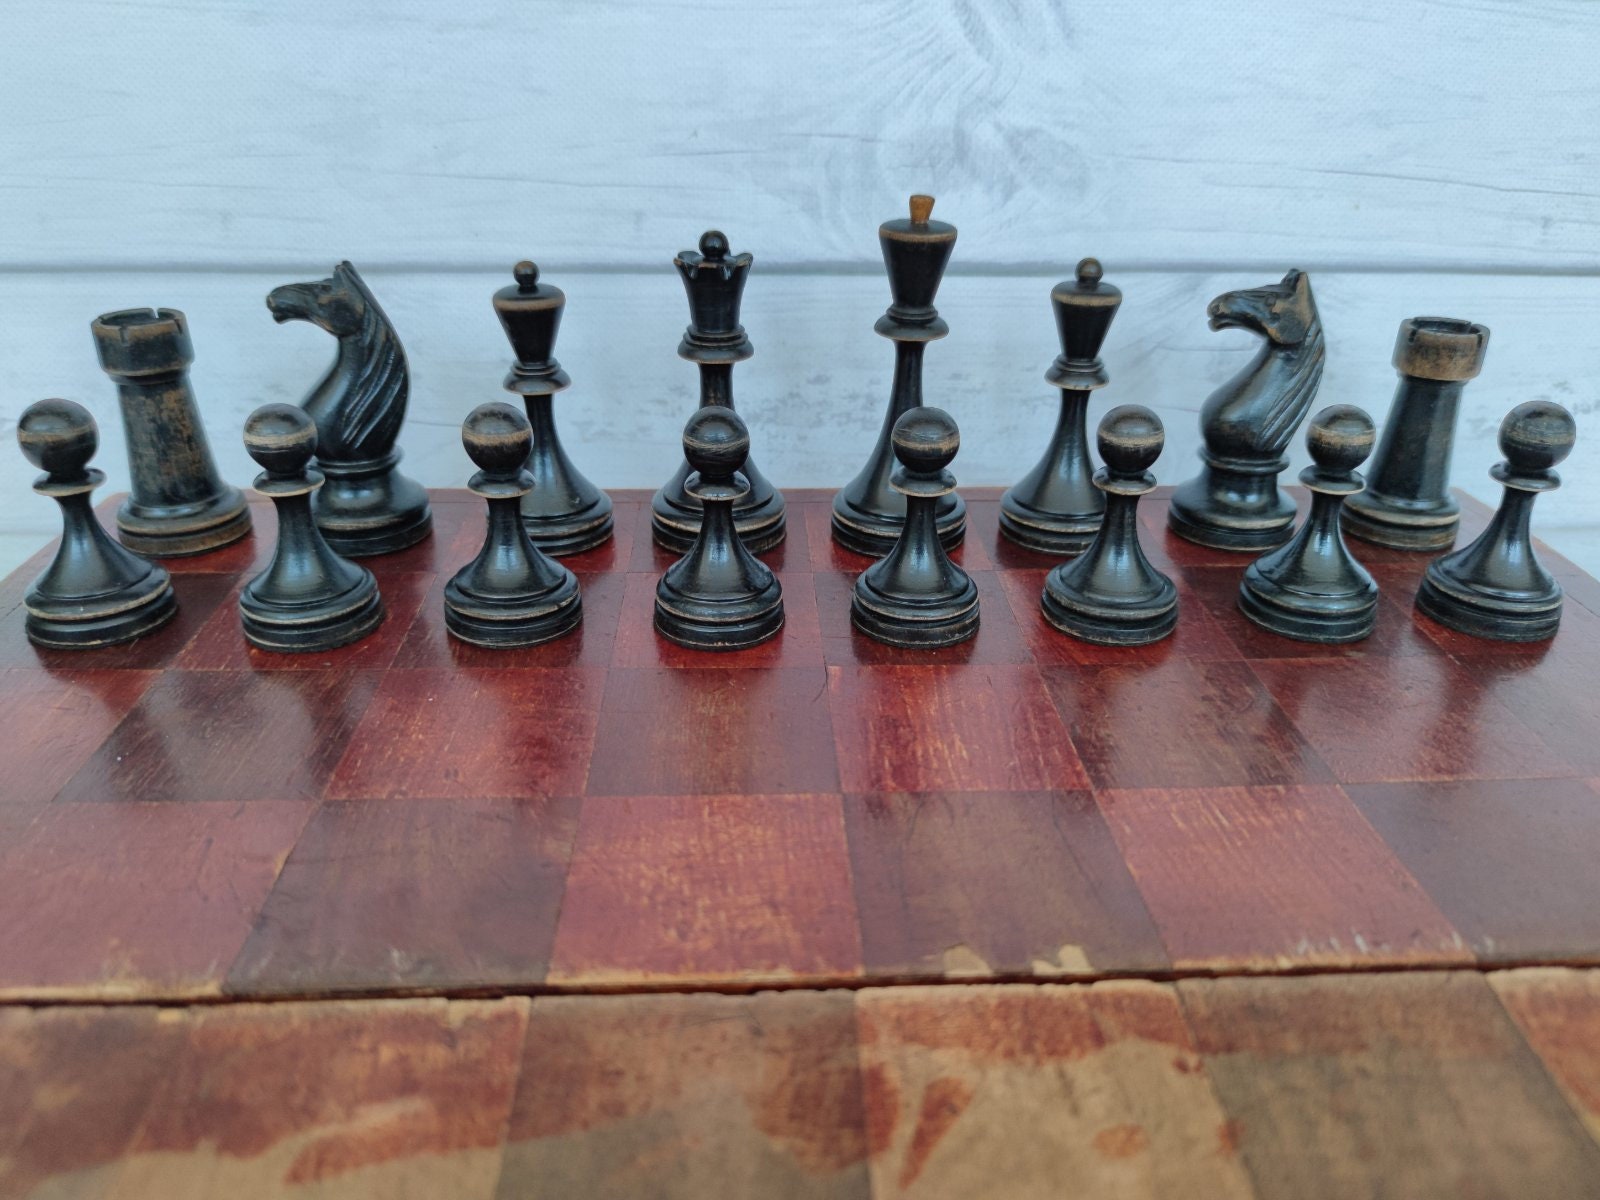 Soviet chess set Botvinnik-Flohr II 30s vintage in -  Portugal